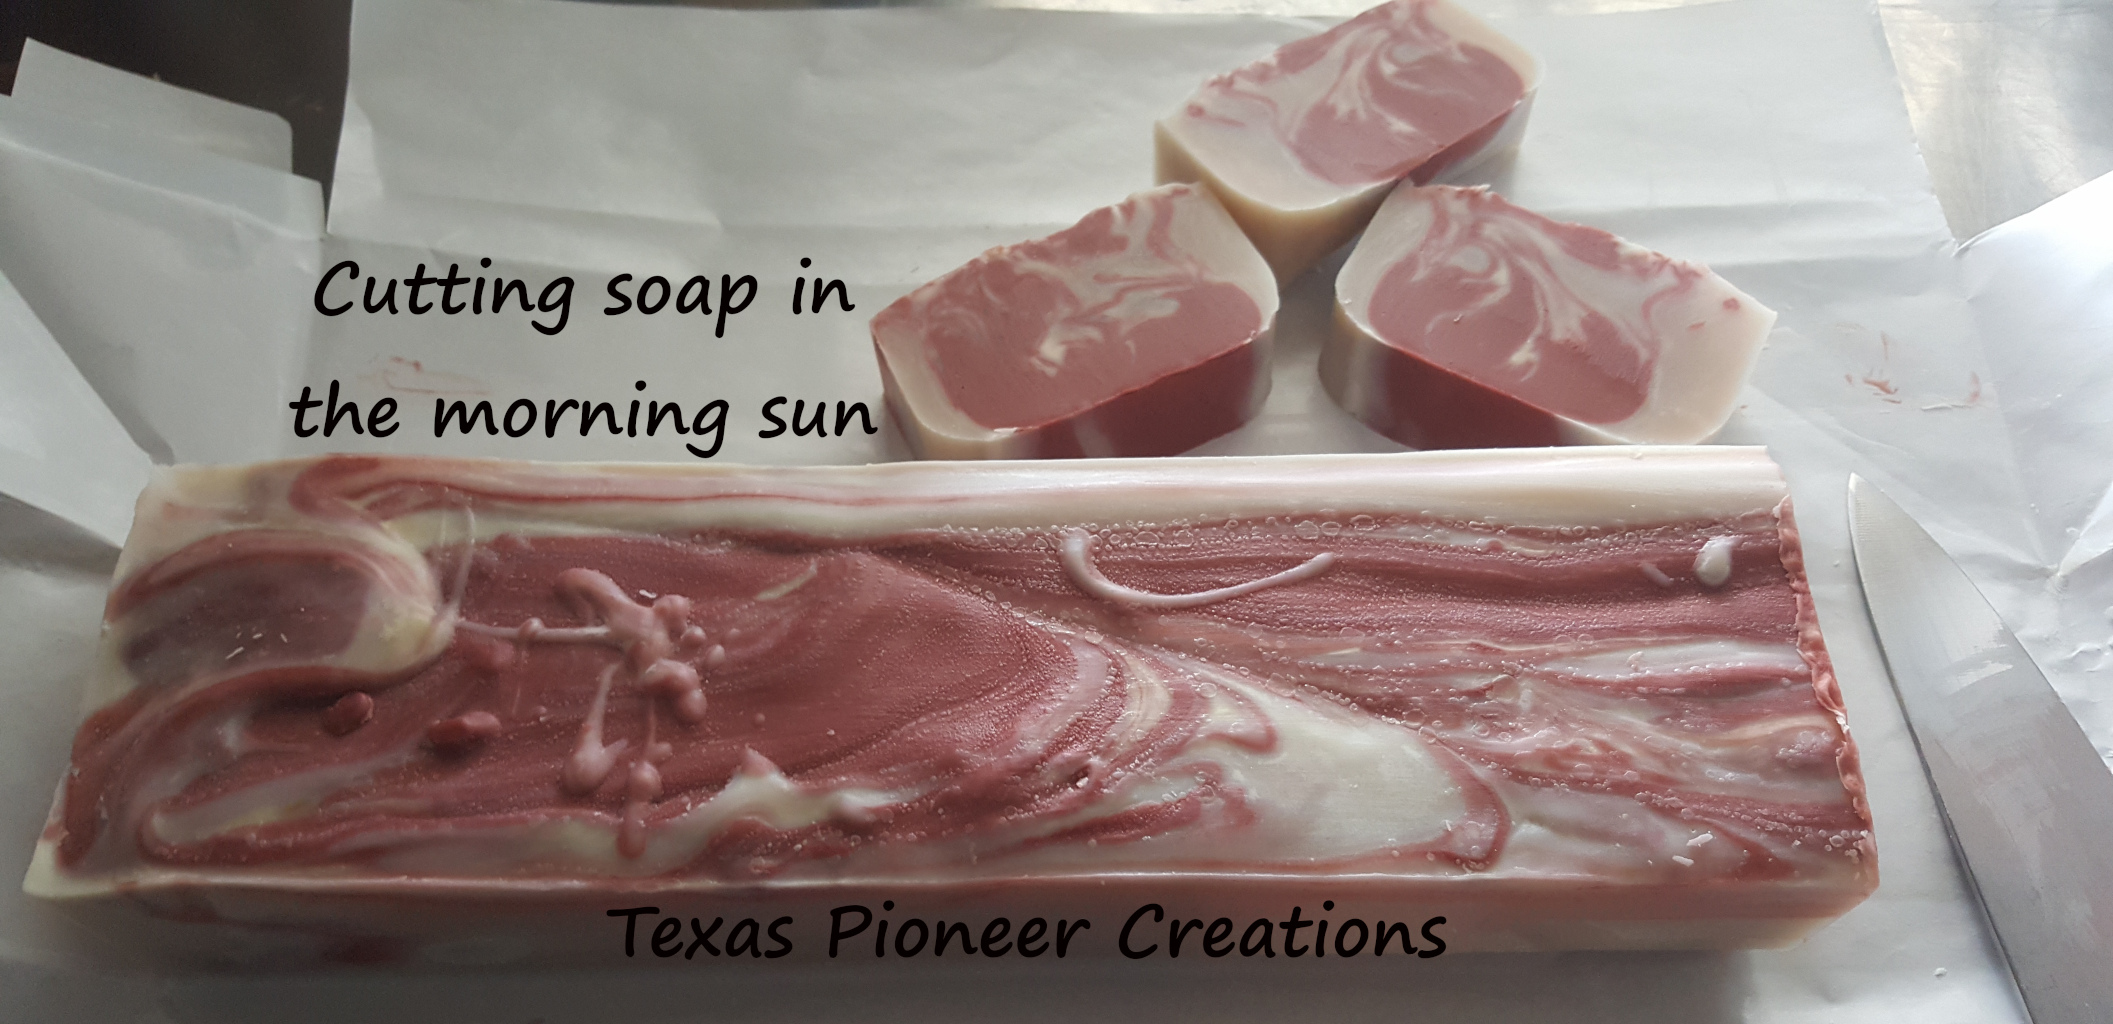 Cutting soap in the morning sun